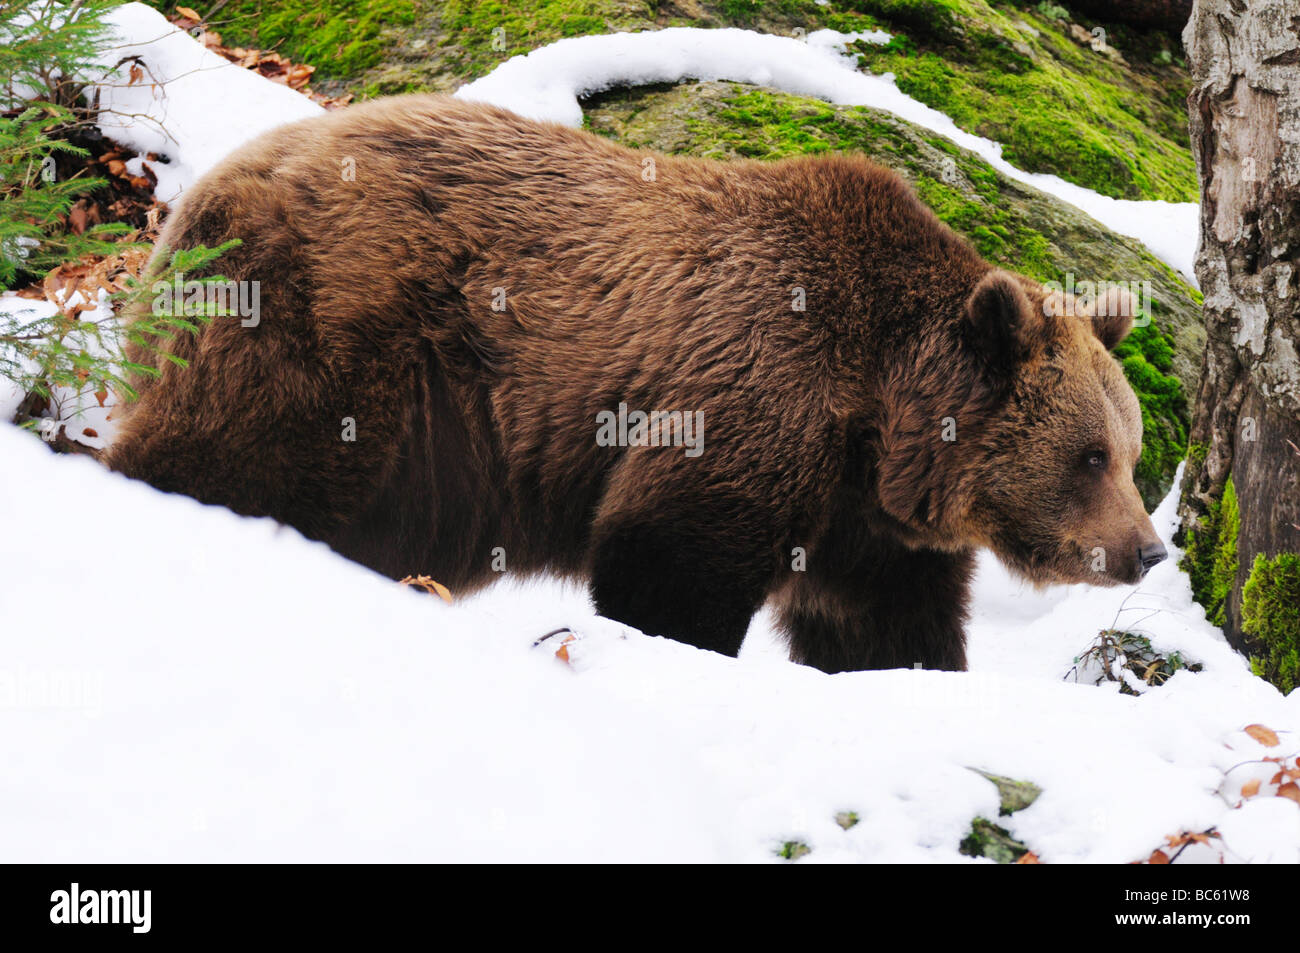 Ours brun (Ursus arctos) Balade en forêt, parc national de la forêt bavaroise, Bavière, Allemagne Banque D'Images